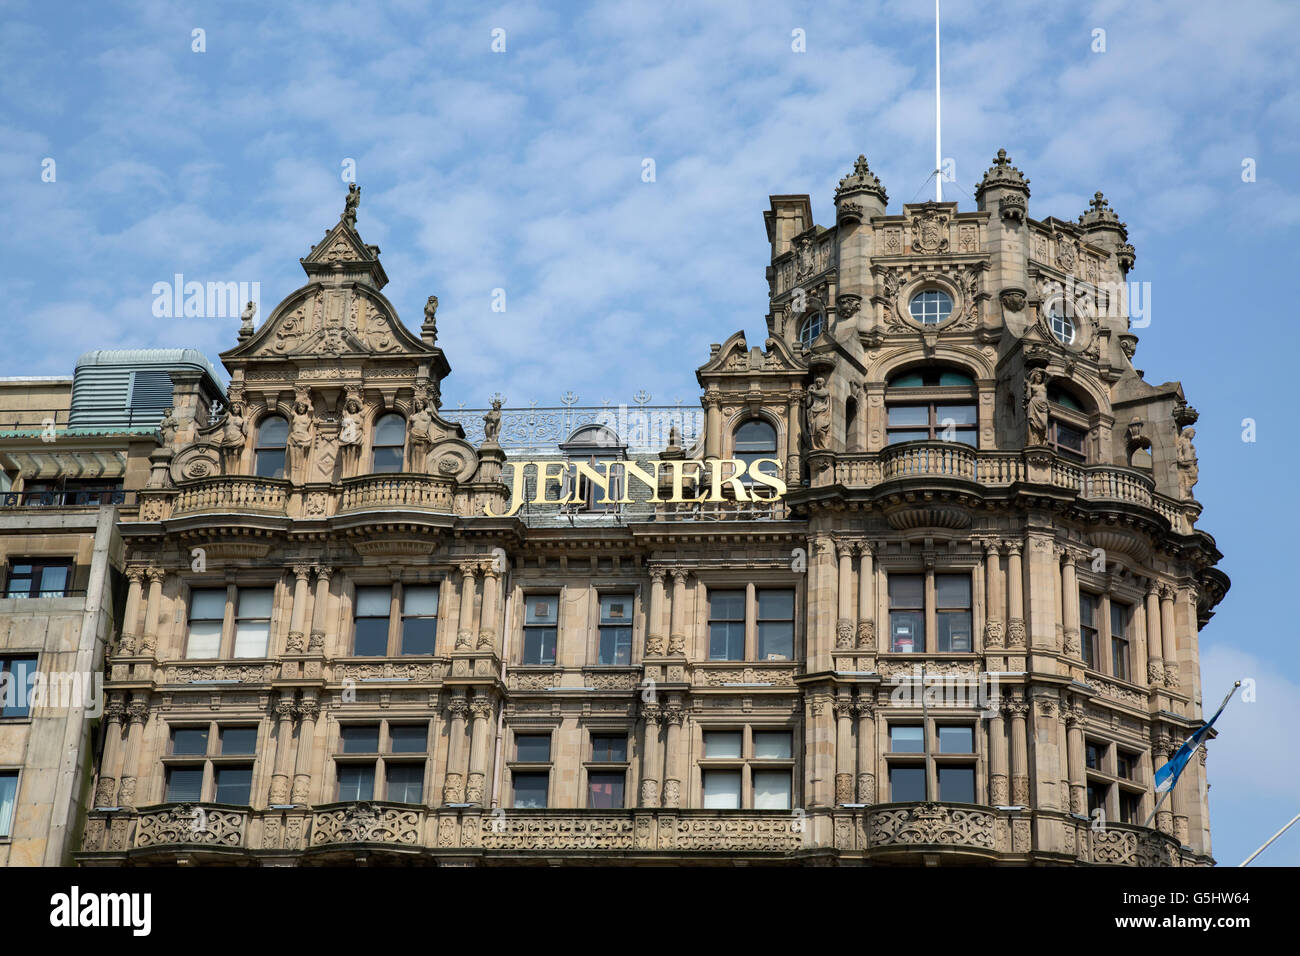 Tienda Jenners, Edimburgo, Escocia, Reino Unido Foto de stock